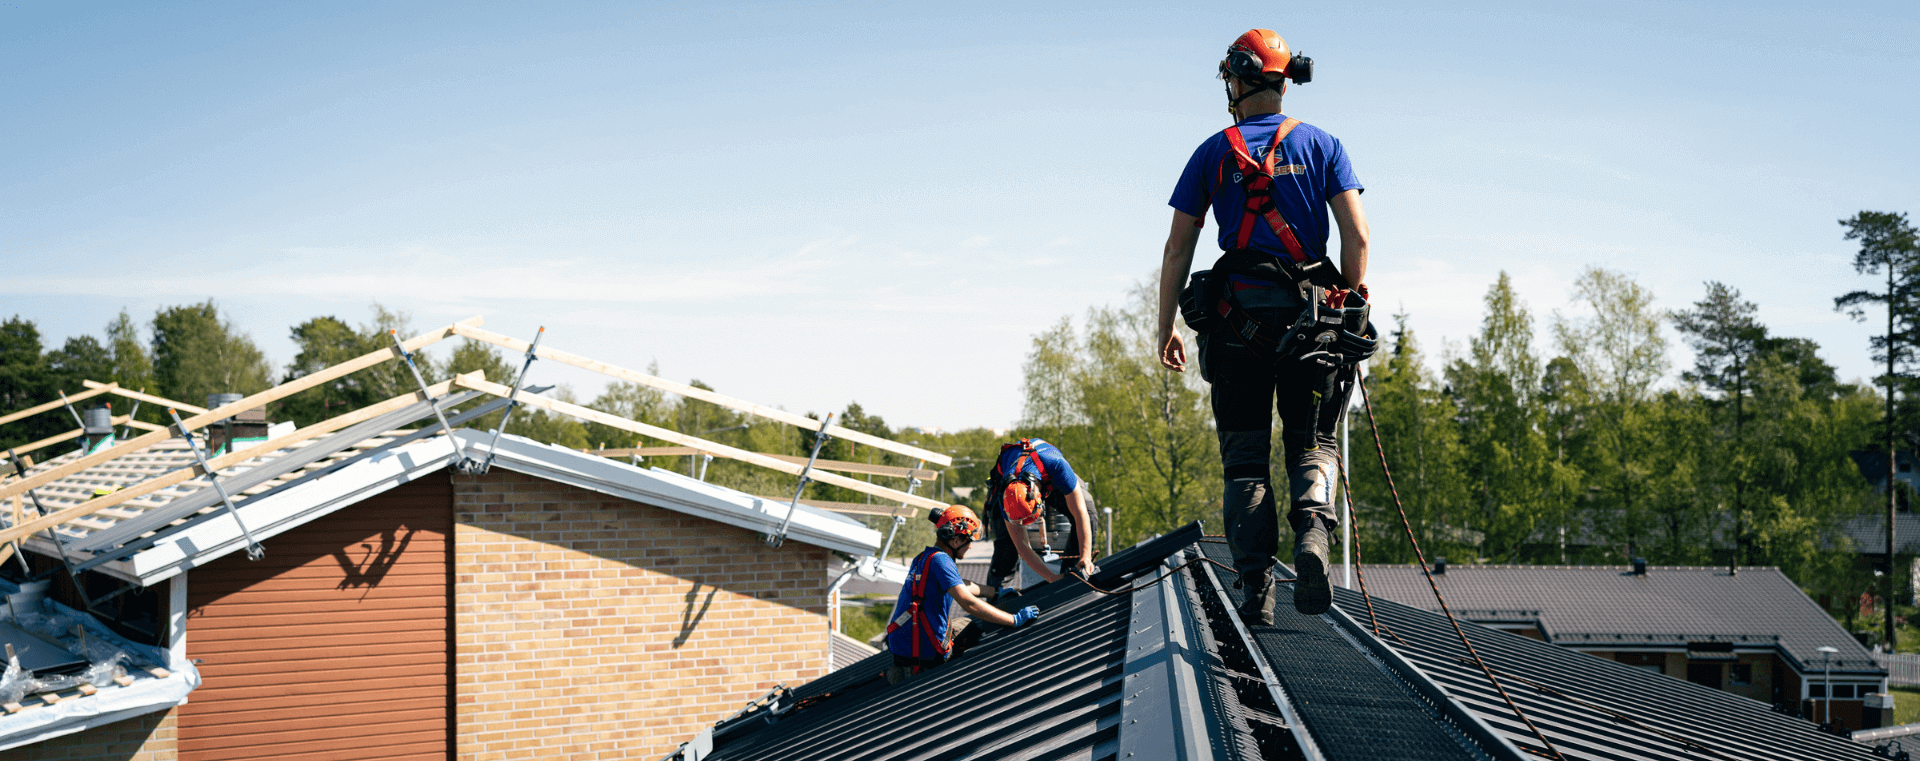 kattoturvatuotteet ja sadevesijärjestelmät asennetaan kattoremontin yhteydessä